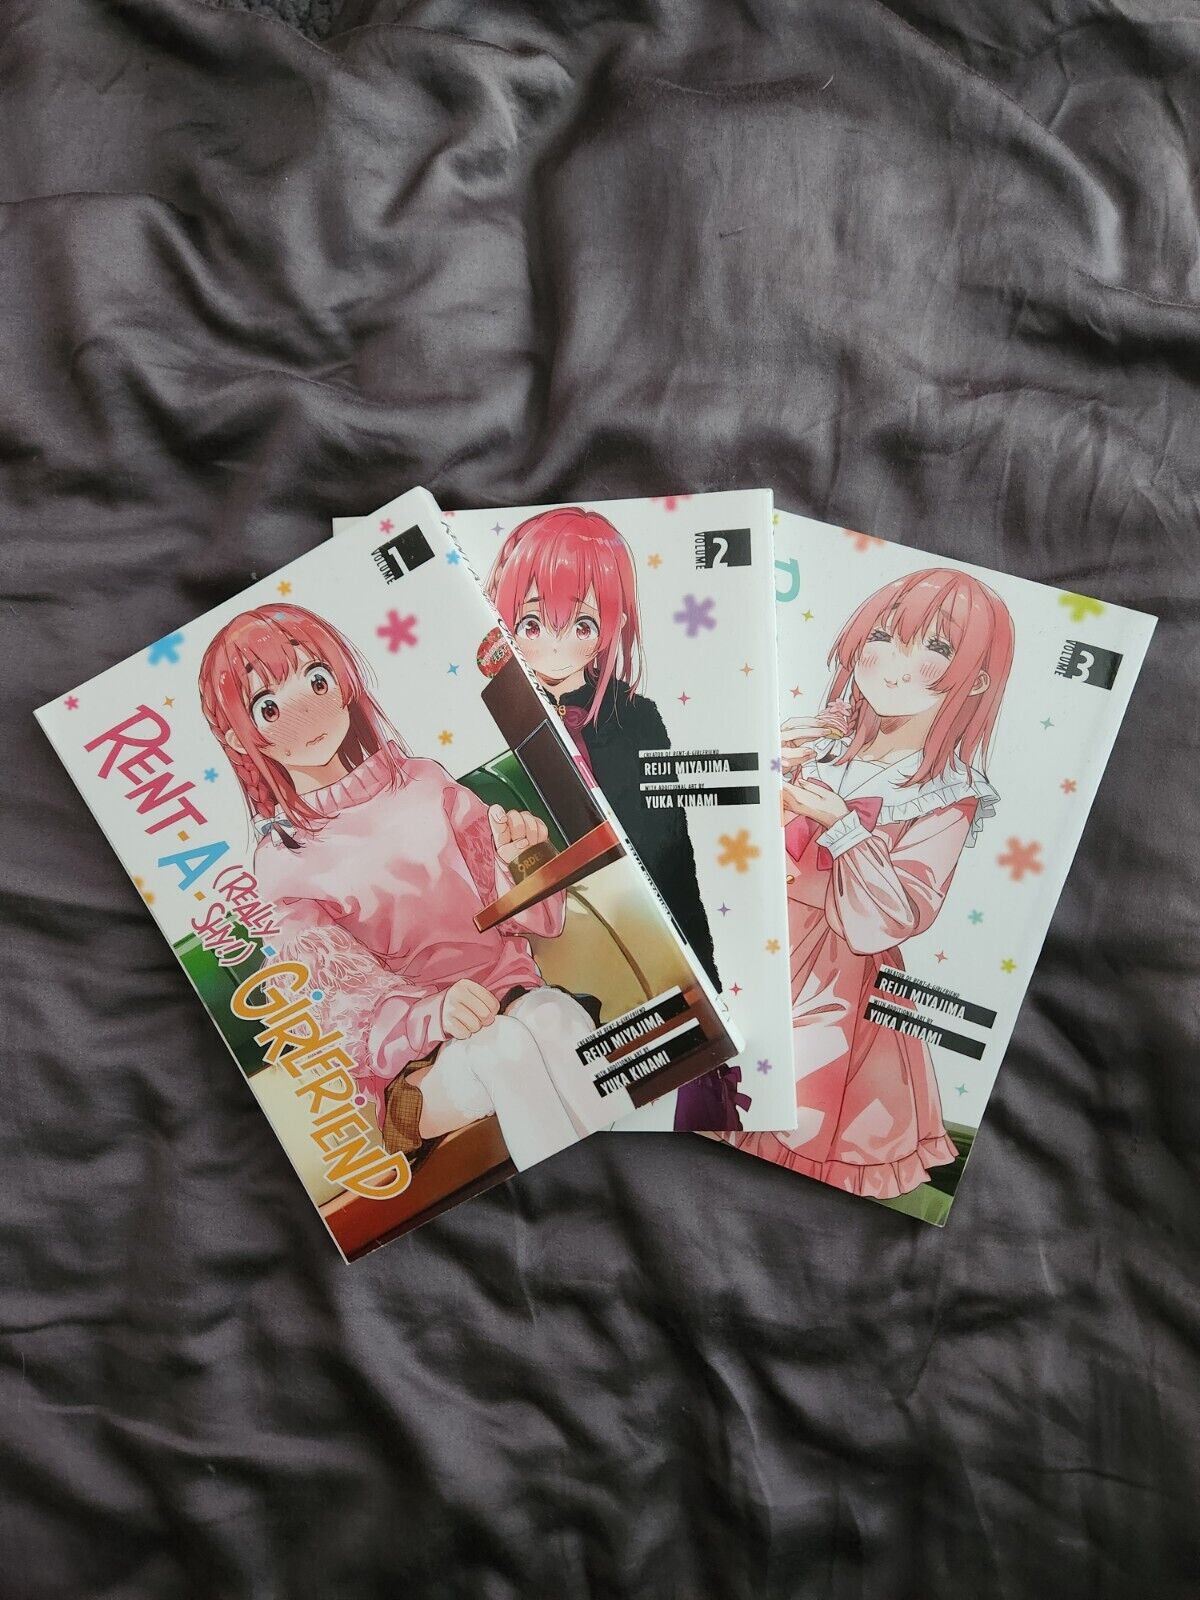 Rent A (Really Shy) Girlfriend Vol 1-3 English Manga Lot